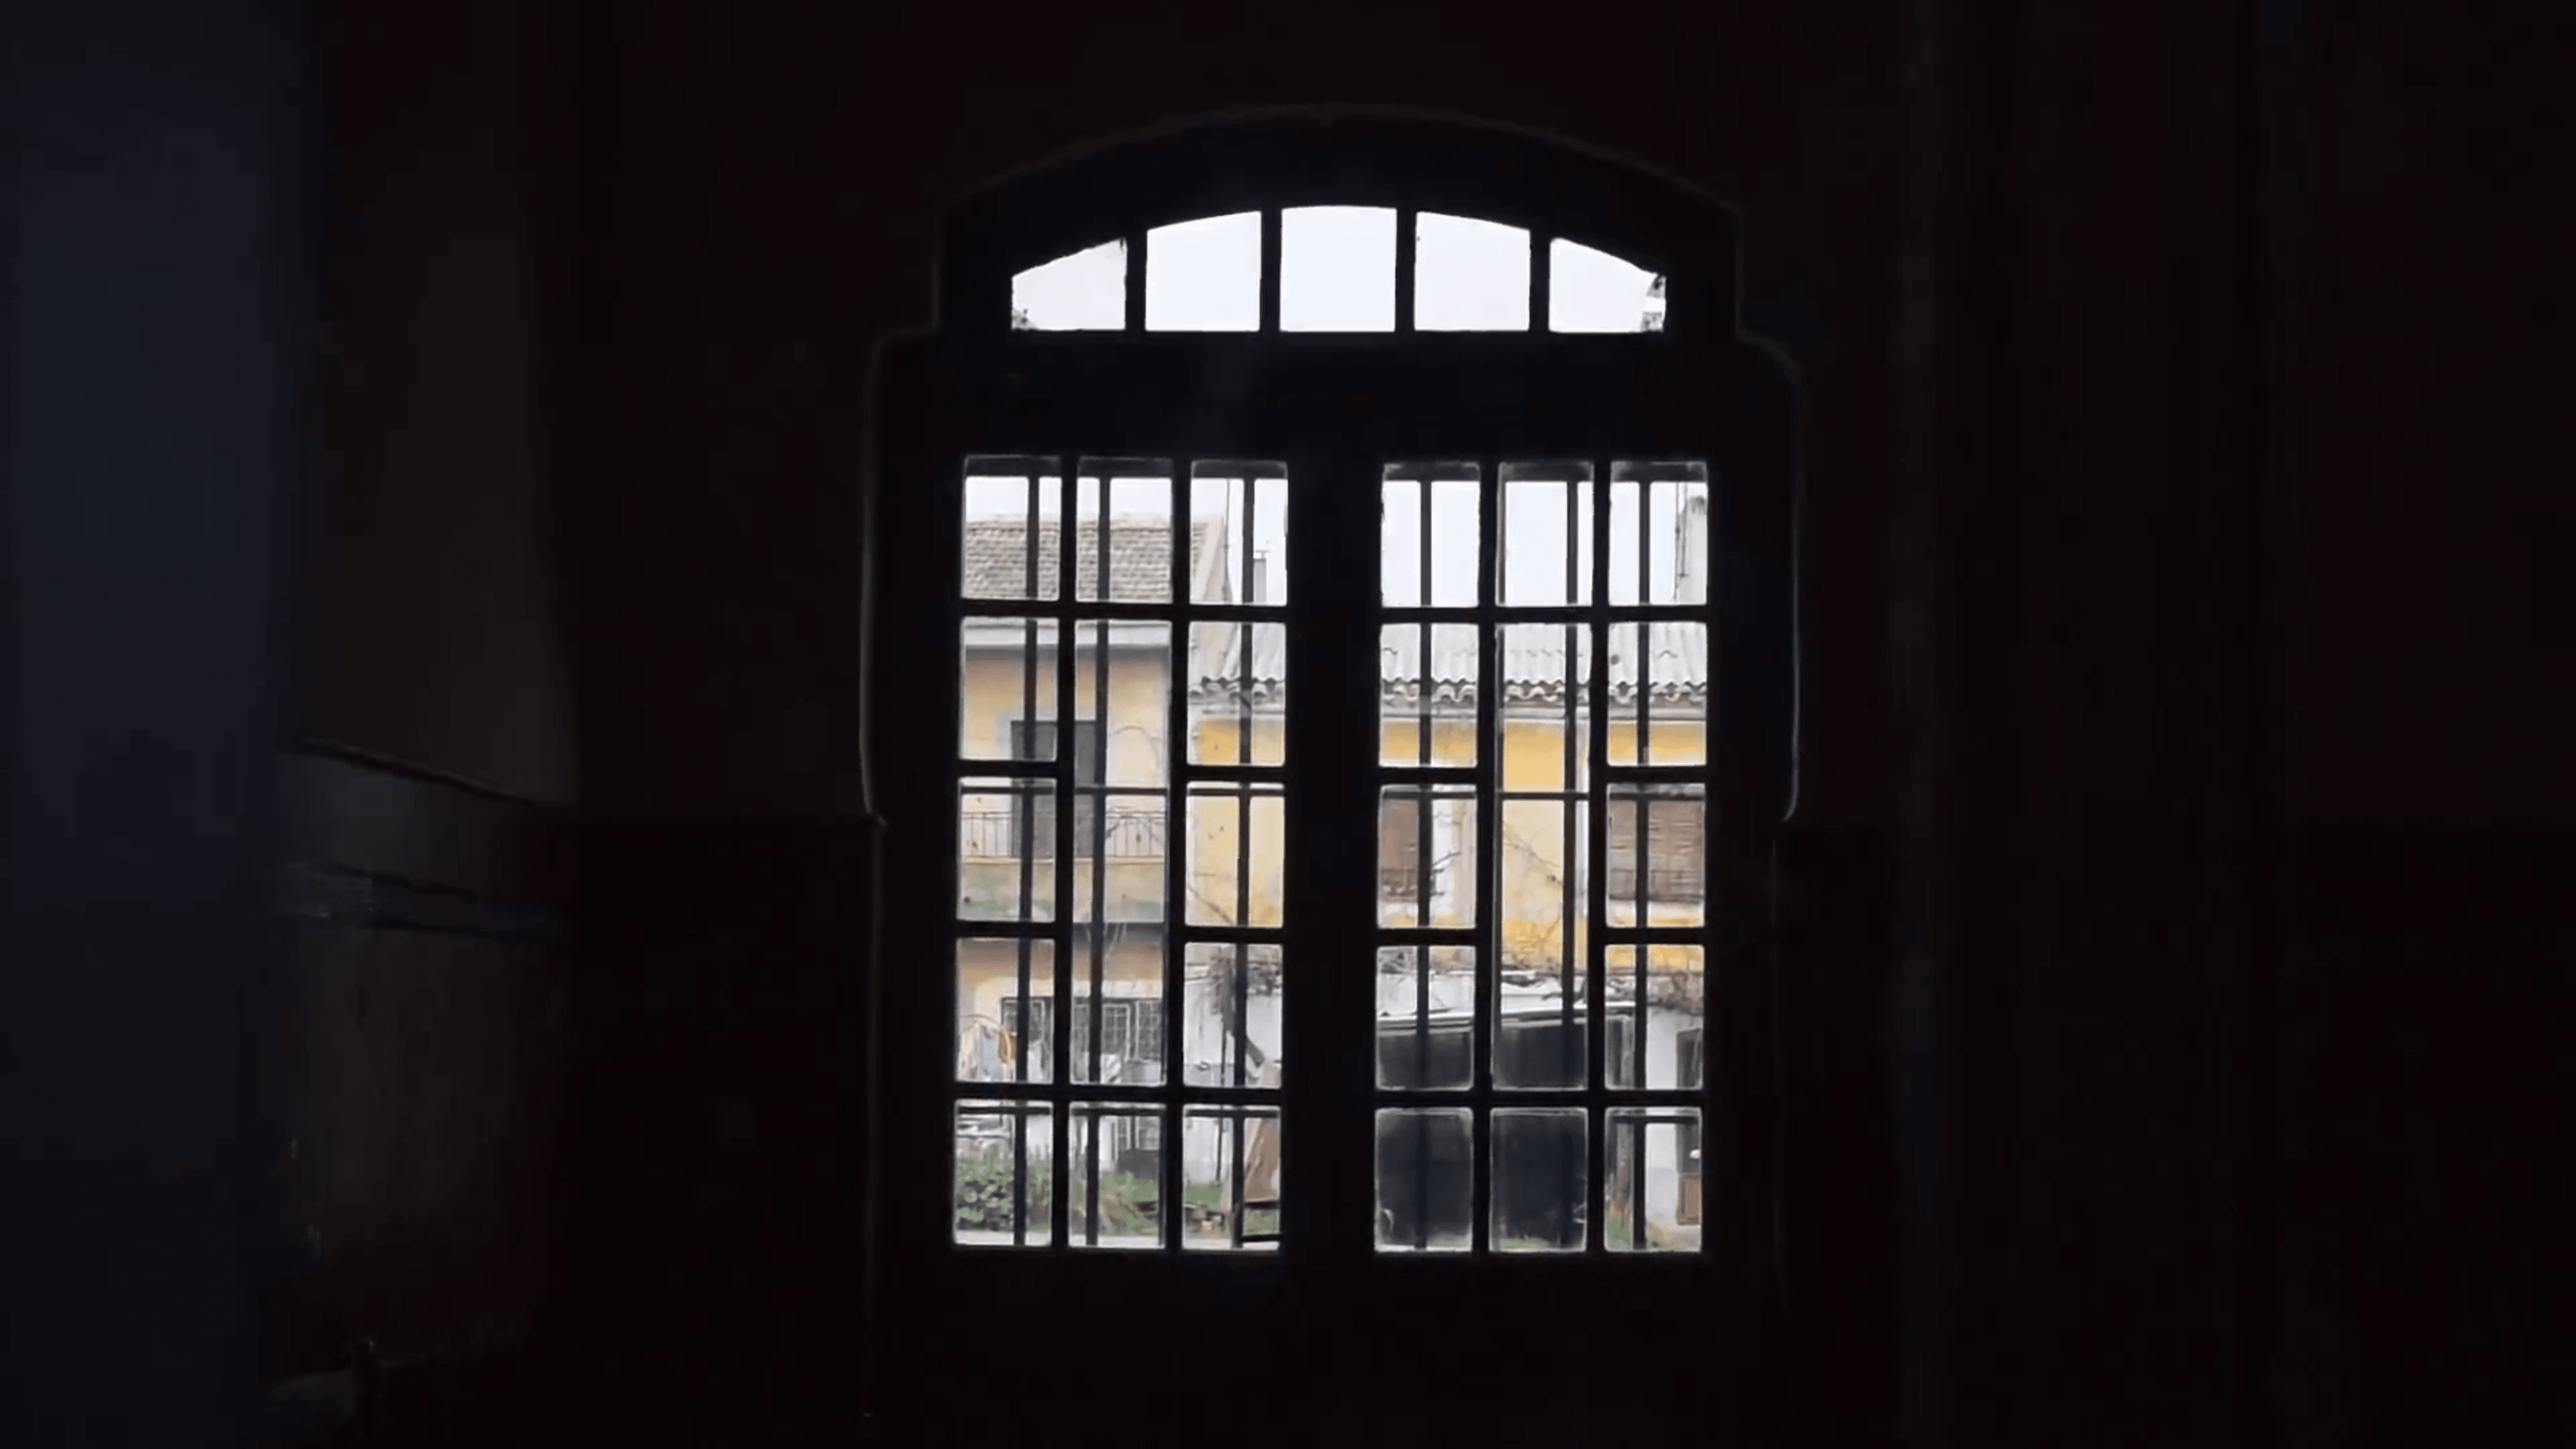 Algodor: La “Estación Fantasma” (Aranjuez)